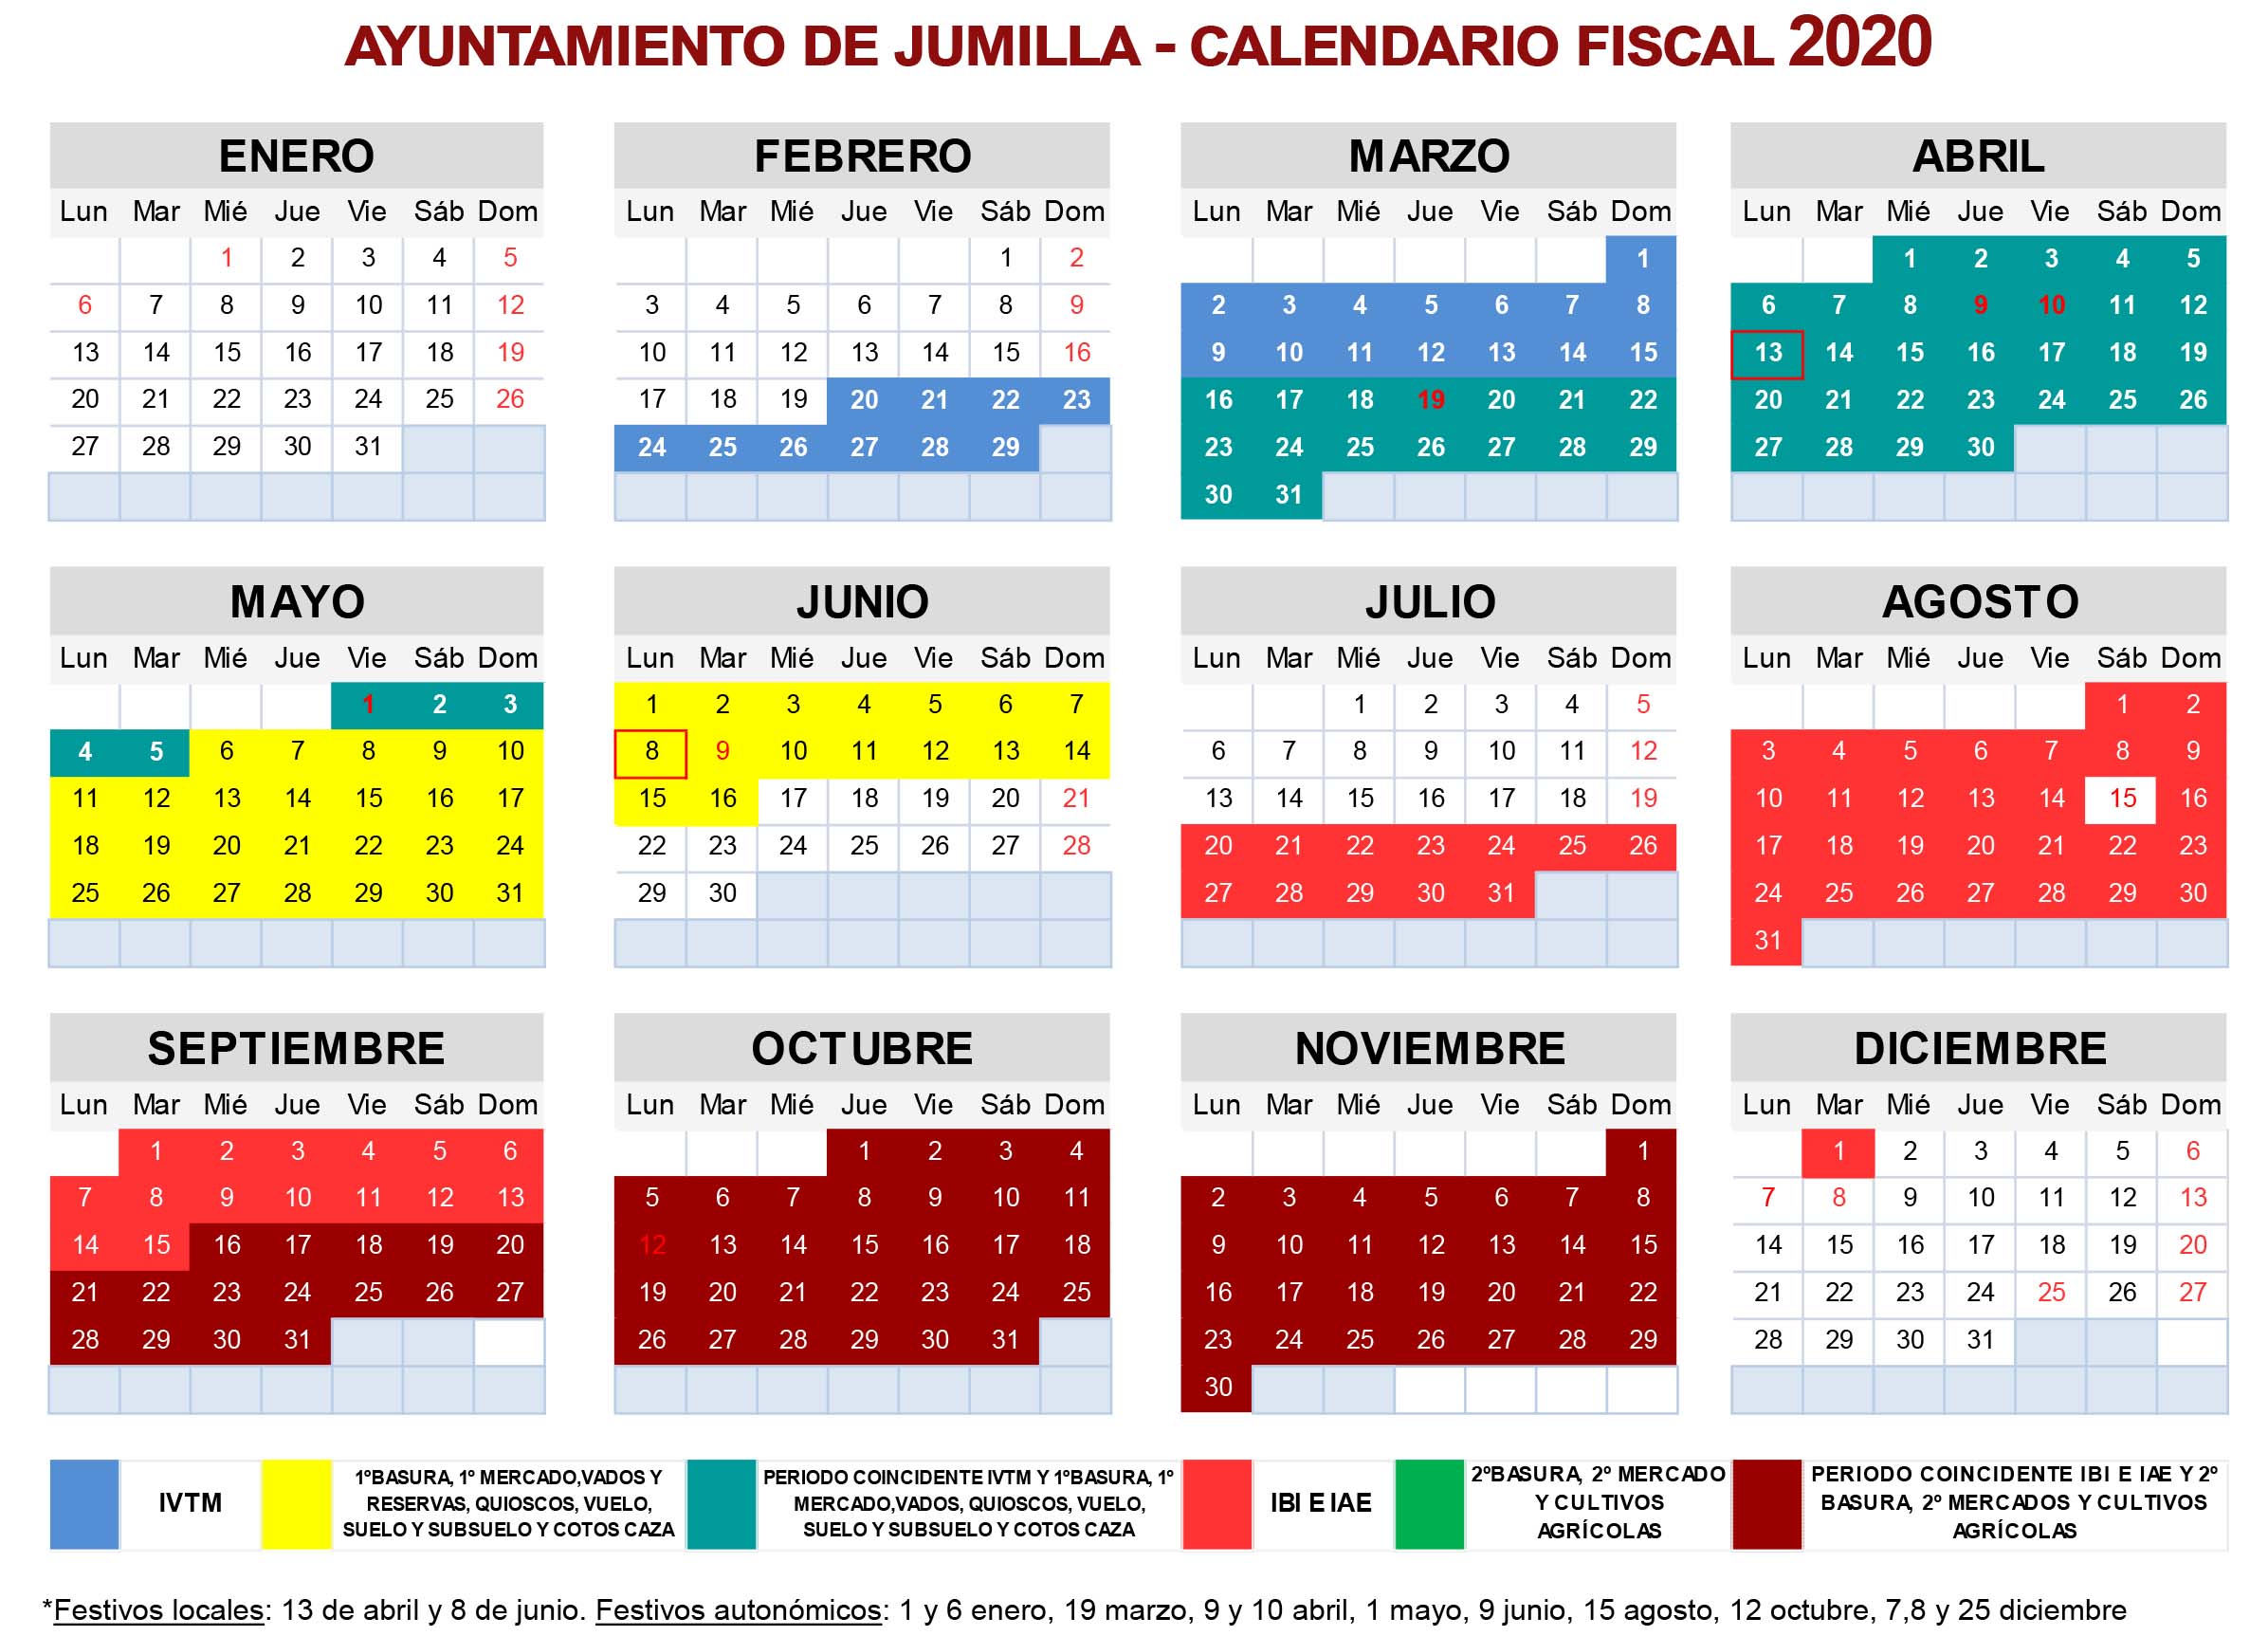 El Ayuntamiento hace público el calendario fiscal de 2020